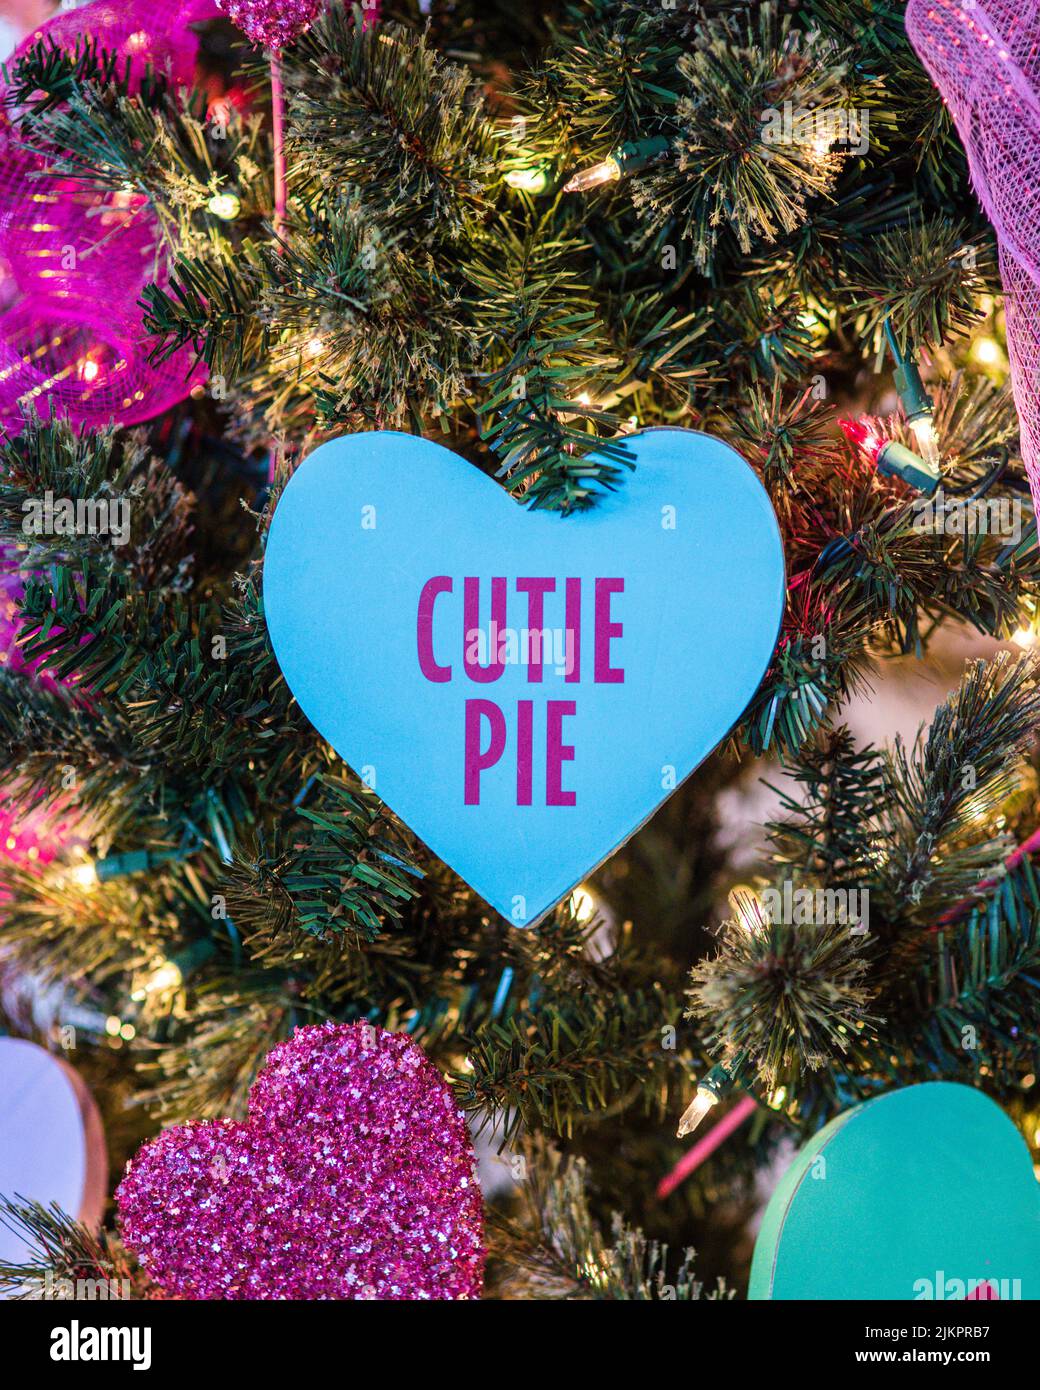 Eine vertikale Nahaufnahme einer blauen Cutie-Pie-Karte auf einem Weihnachtsbaum Stockfoto